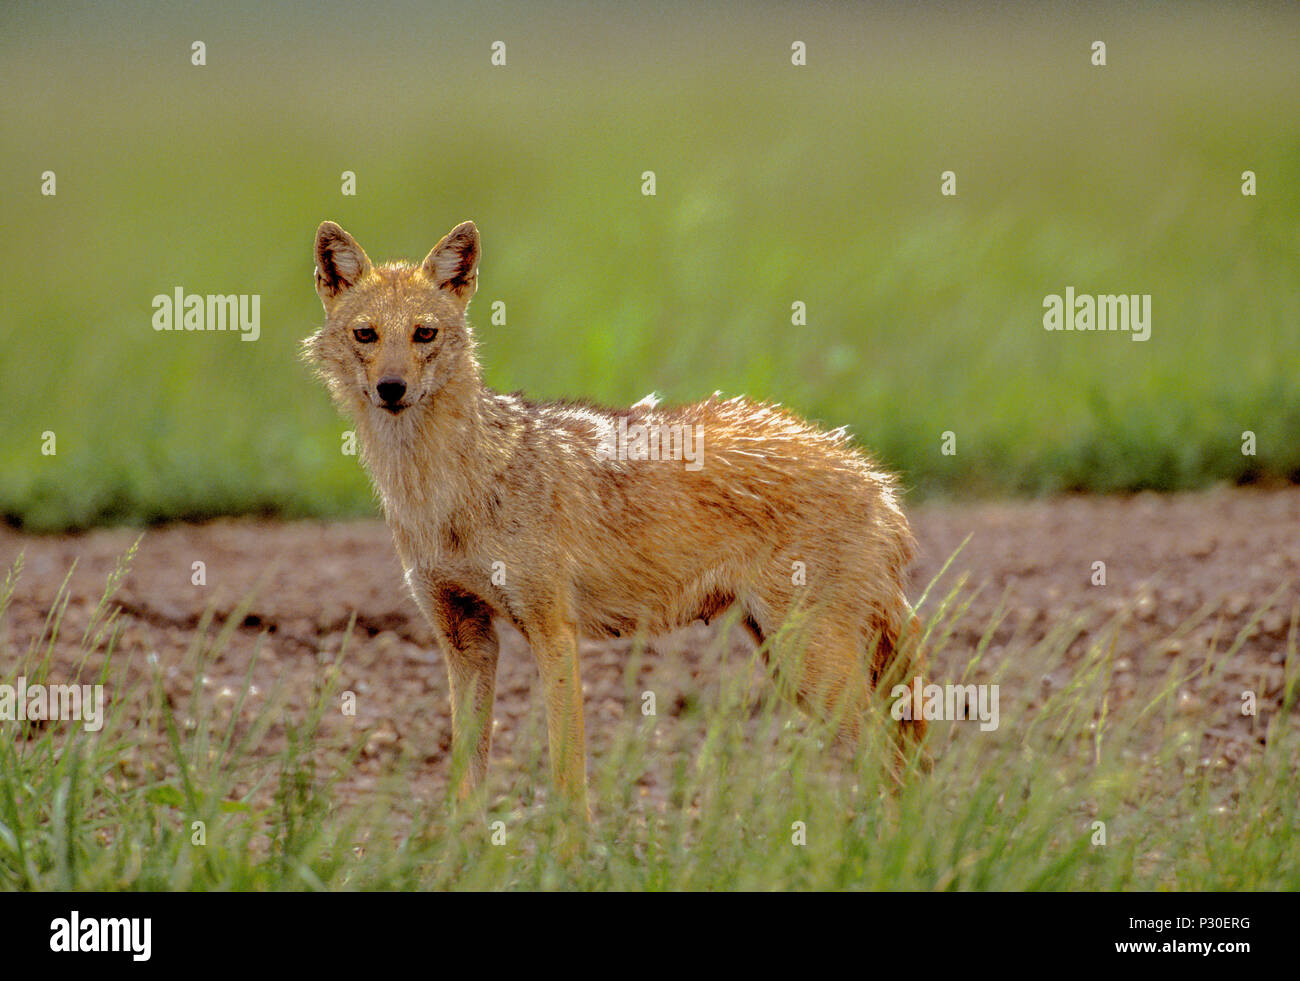 Femme, le chacal, les Indiens adultes (Canis aureus indicus) également connu sous le nom de chacal doré (Canis aureus), Parc National, Velavadar Blackbuck, Gujarat, Inde Banque D'Images